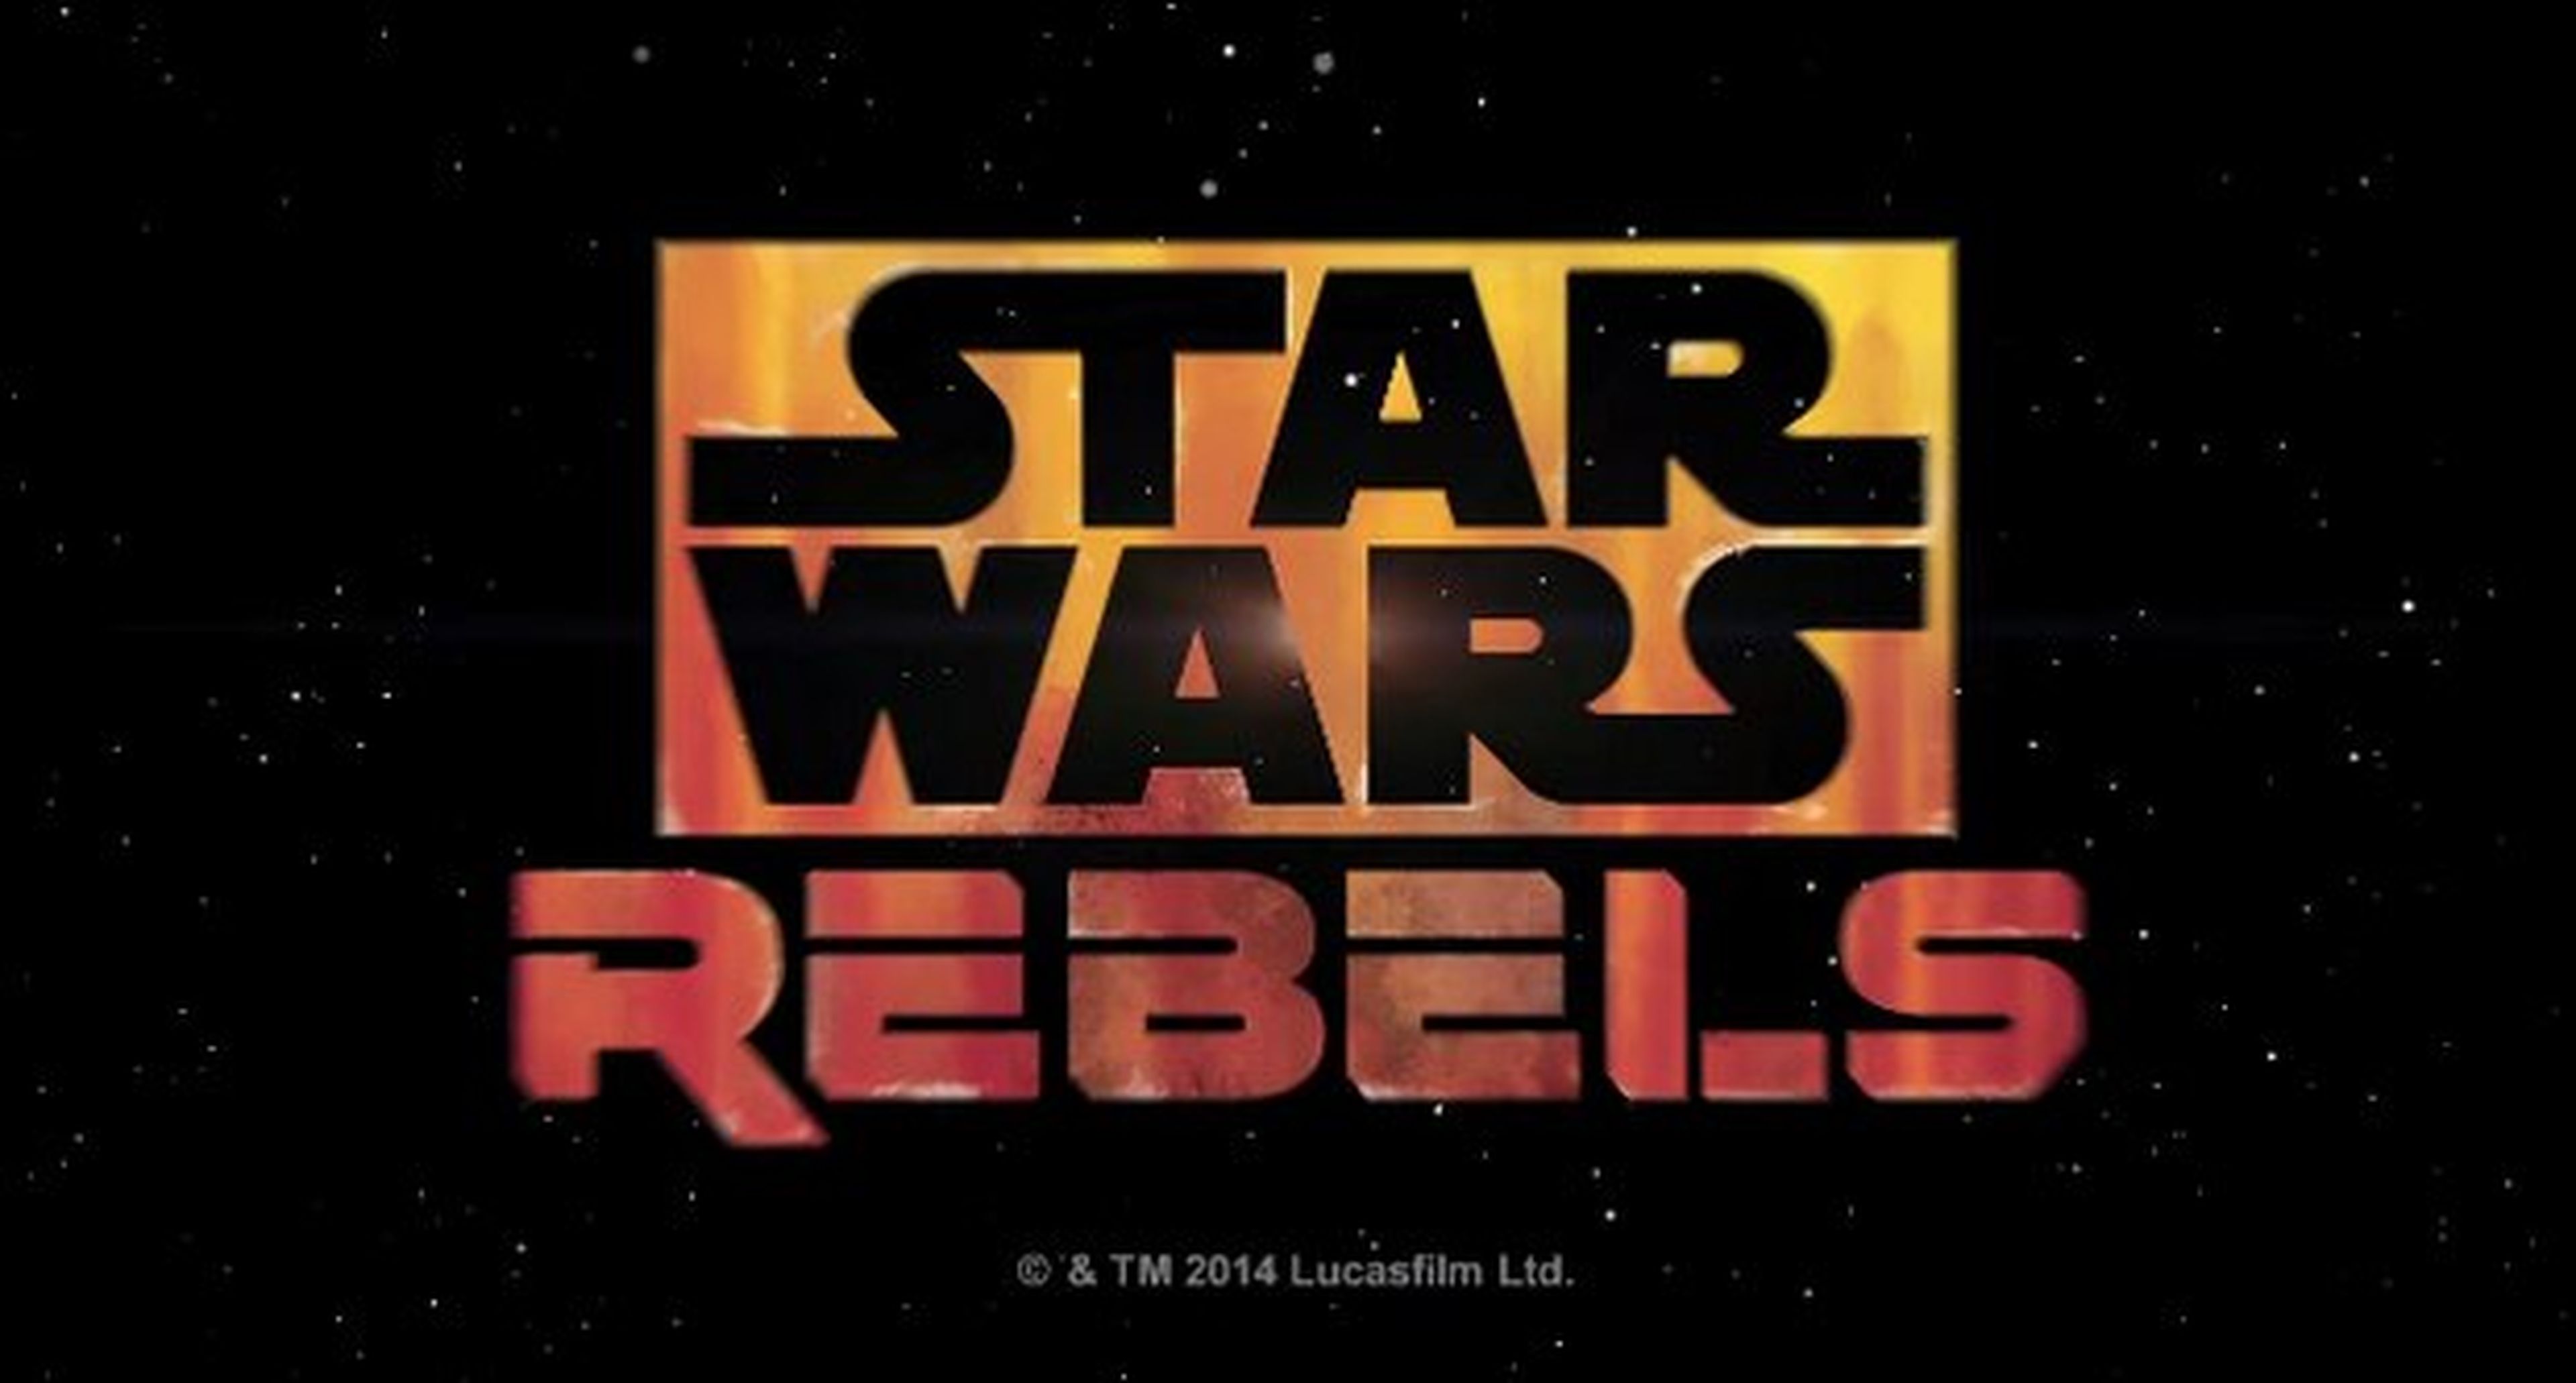 Primer trailer de Star Wars: Rebels, la nueva serie de Disney